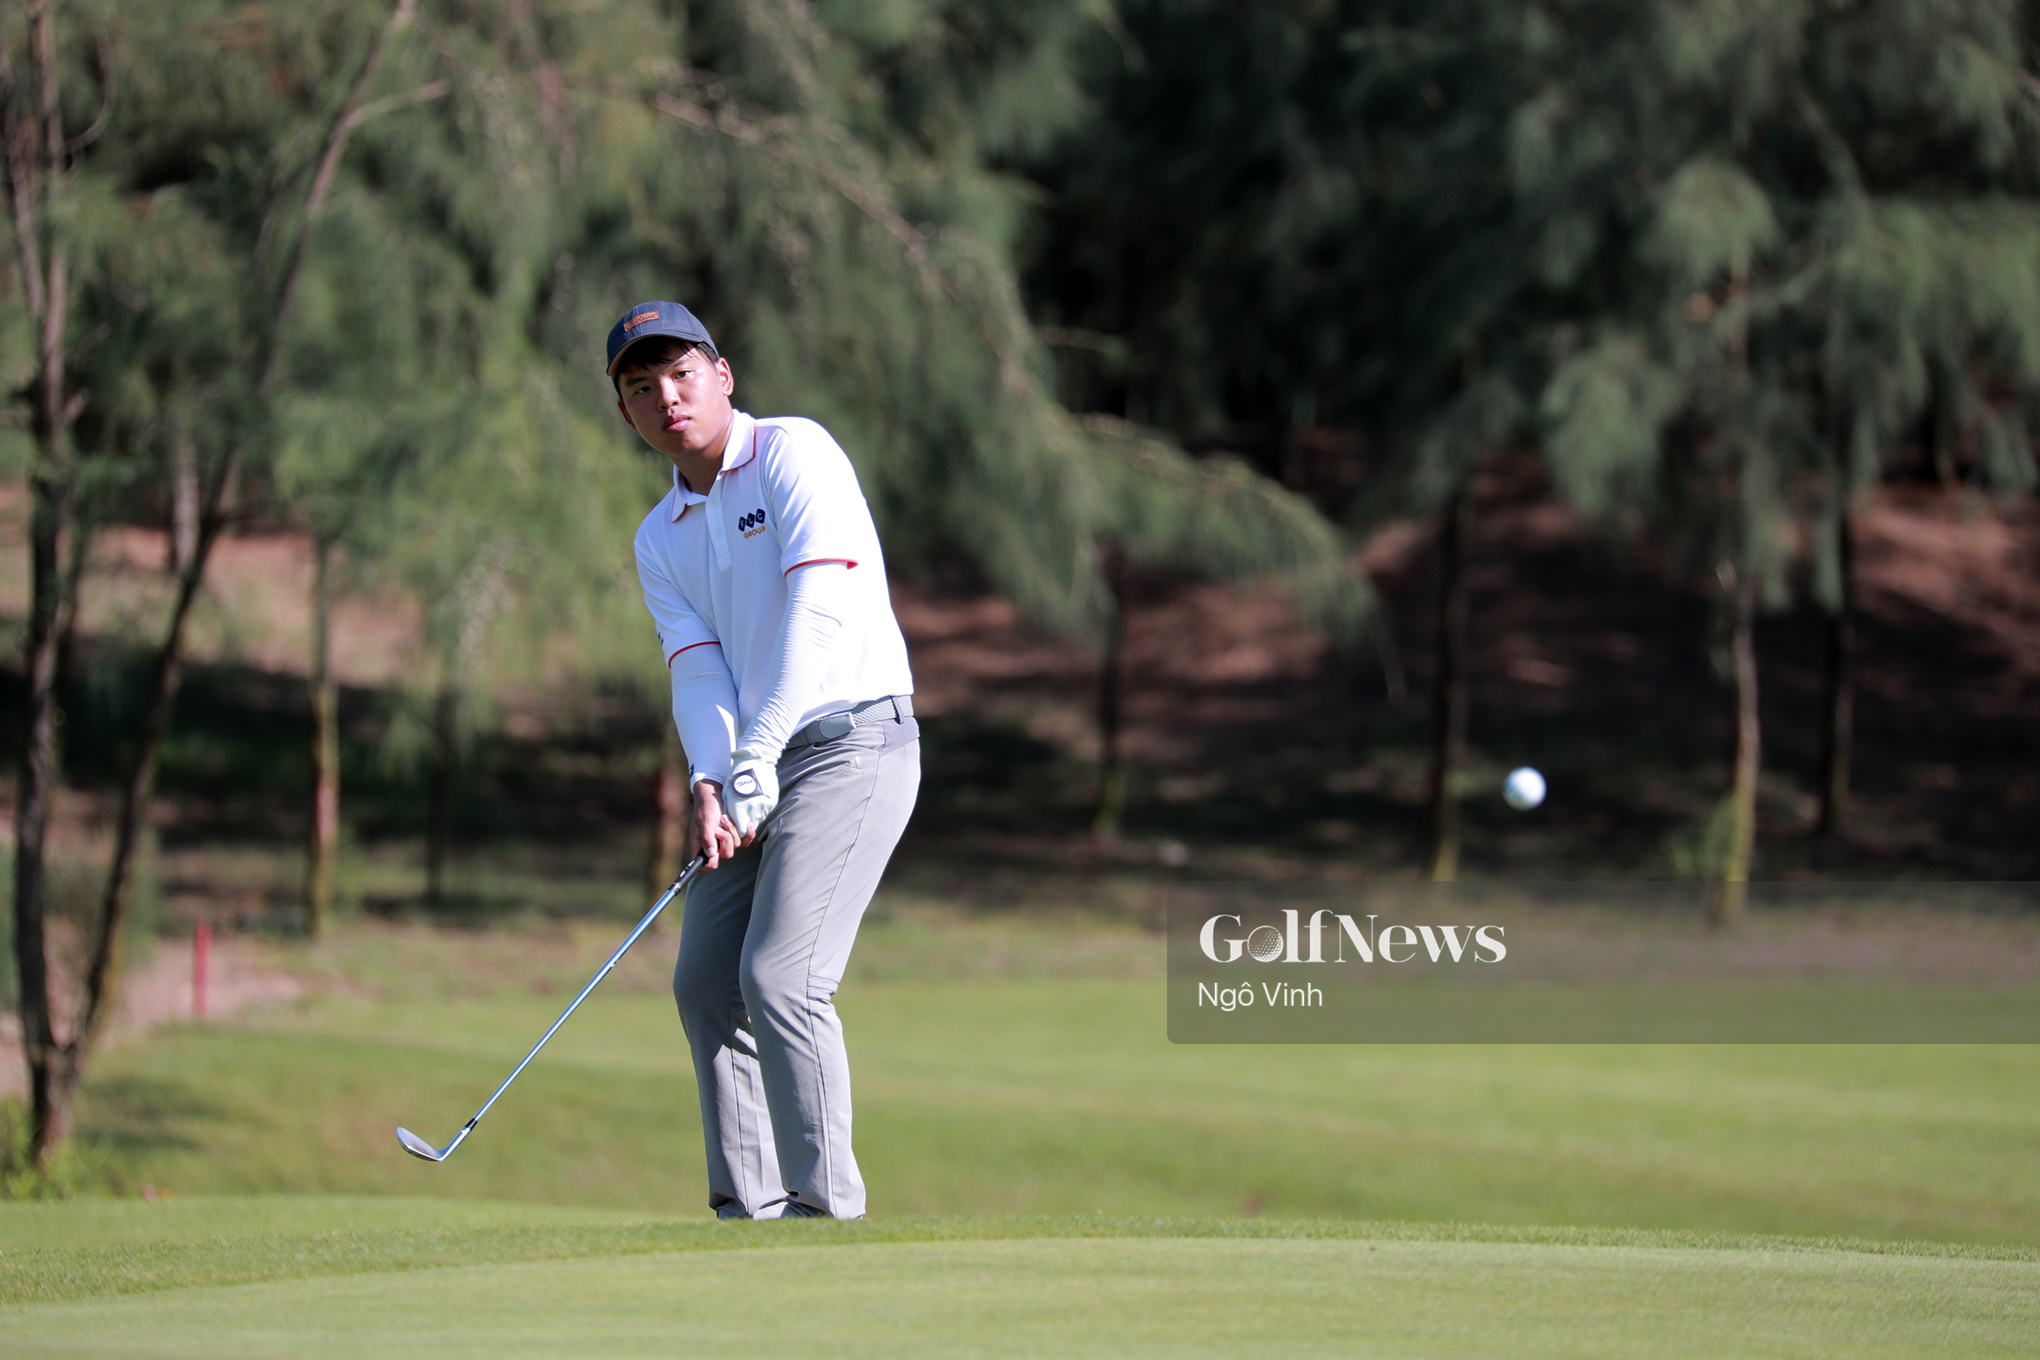 FLC Ha Noi Junior Golf Tour 2019 lần 3: Golfer trẻ Nguyễn Vũ Quốc Anh tạm dẫn đầu với gross 80